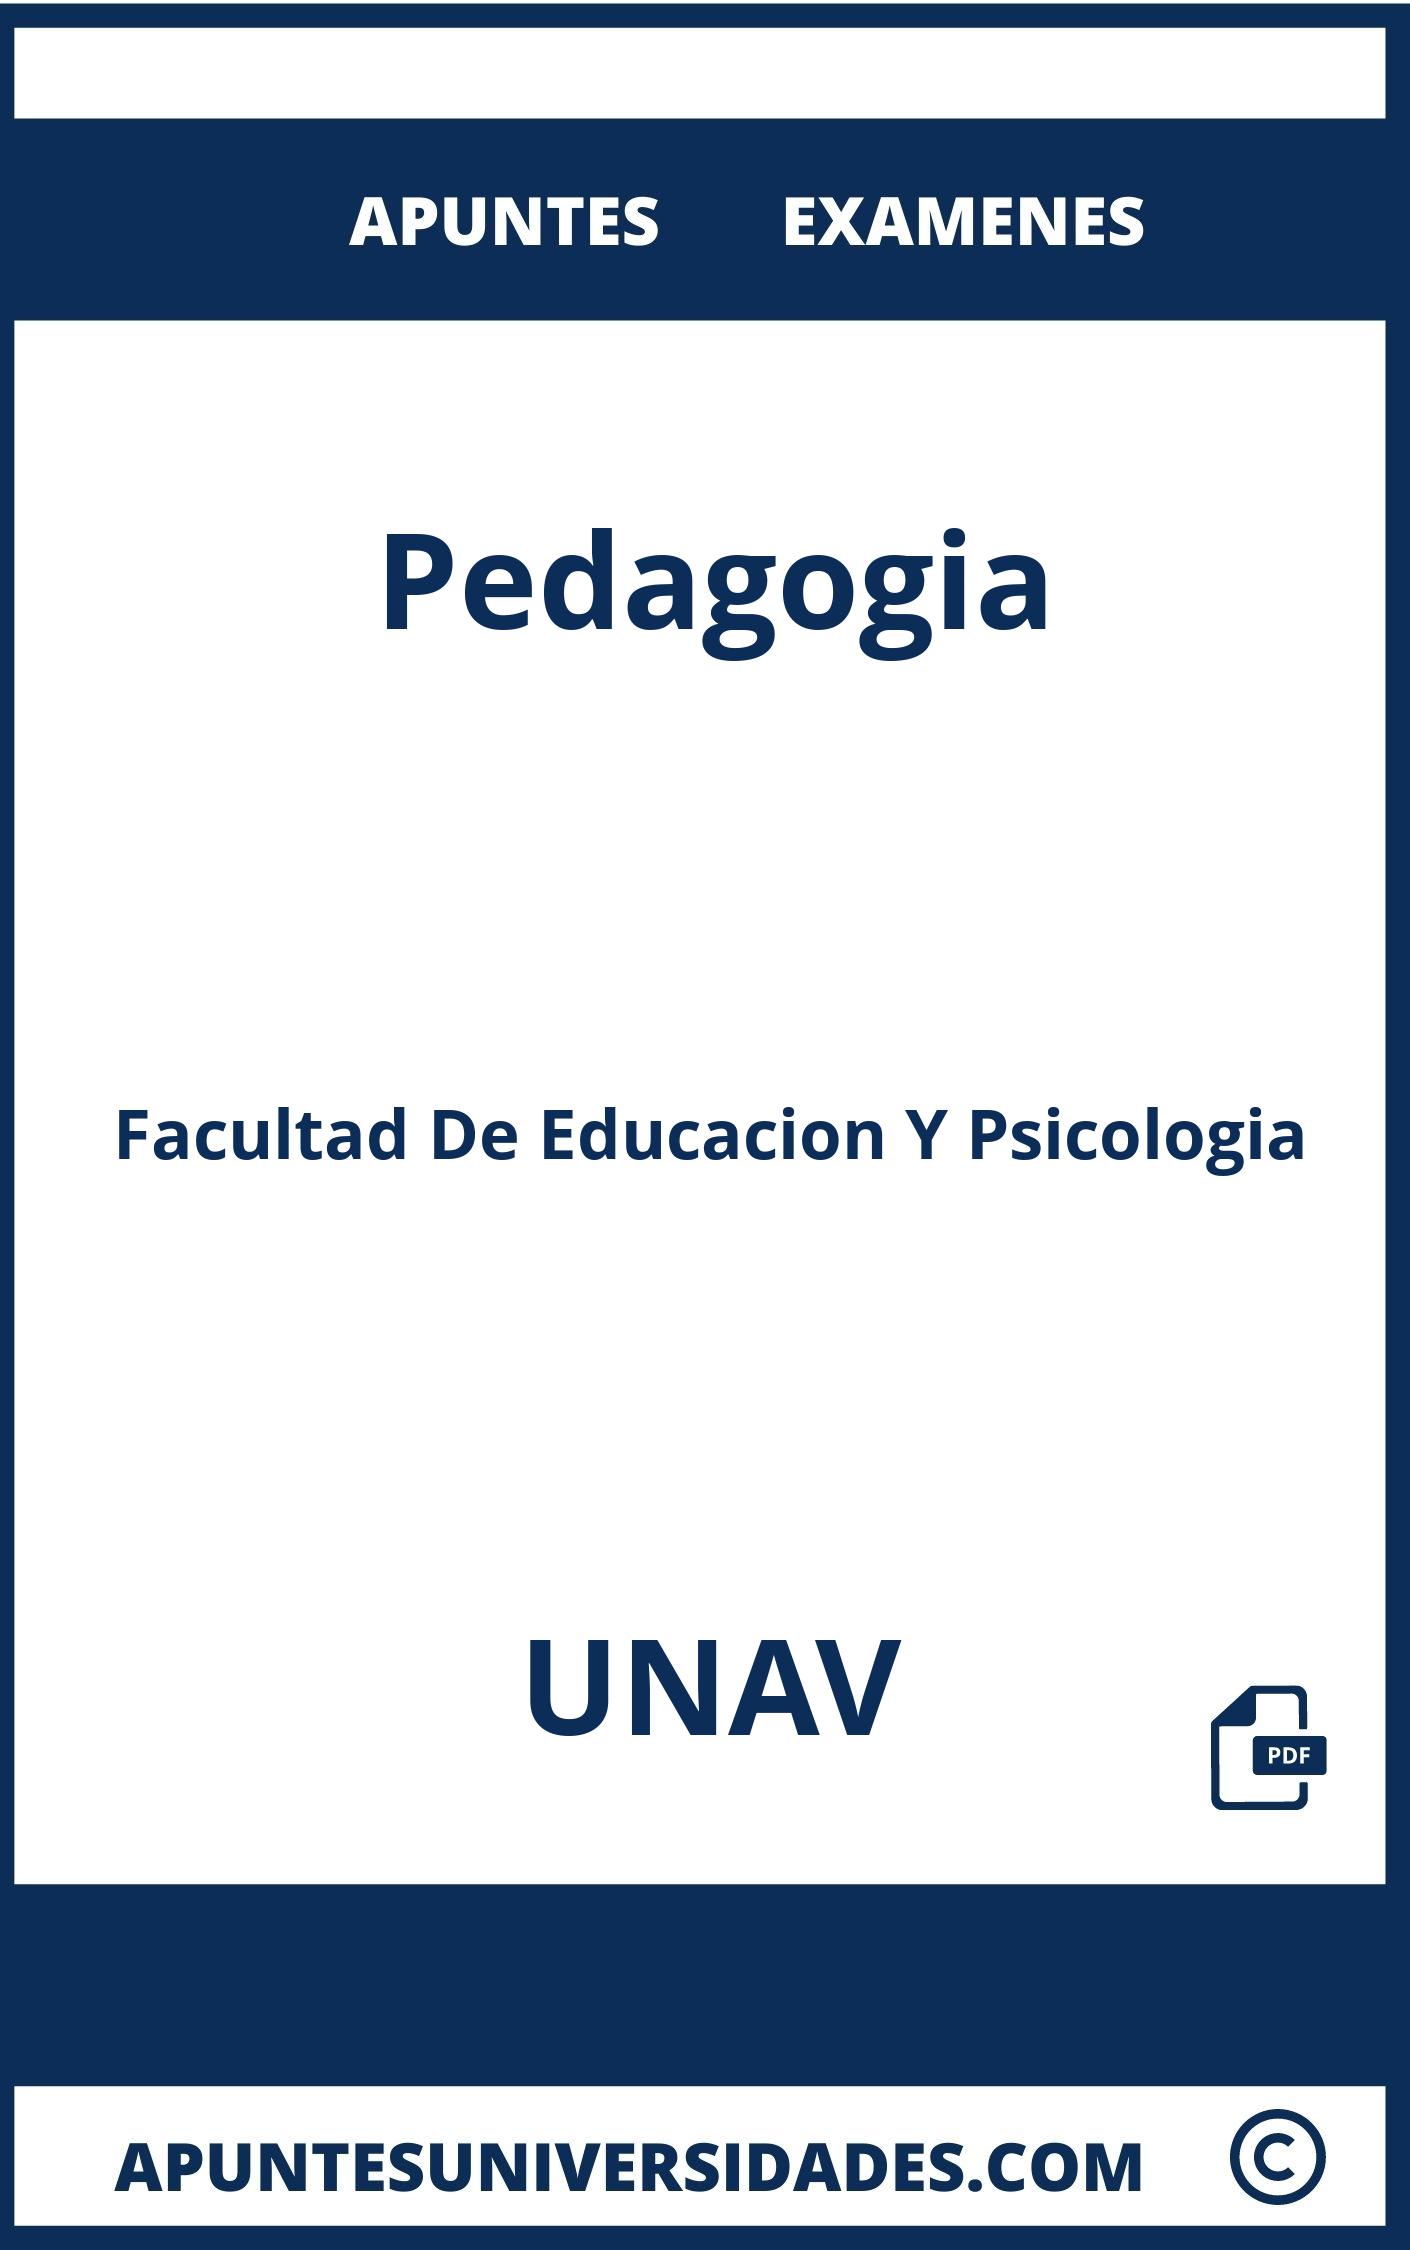 Apuntes Examenes Pedagogia UNAV